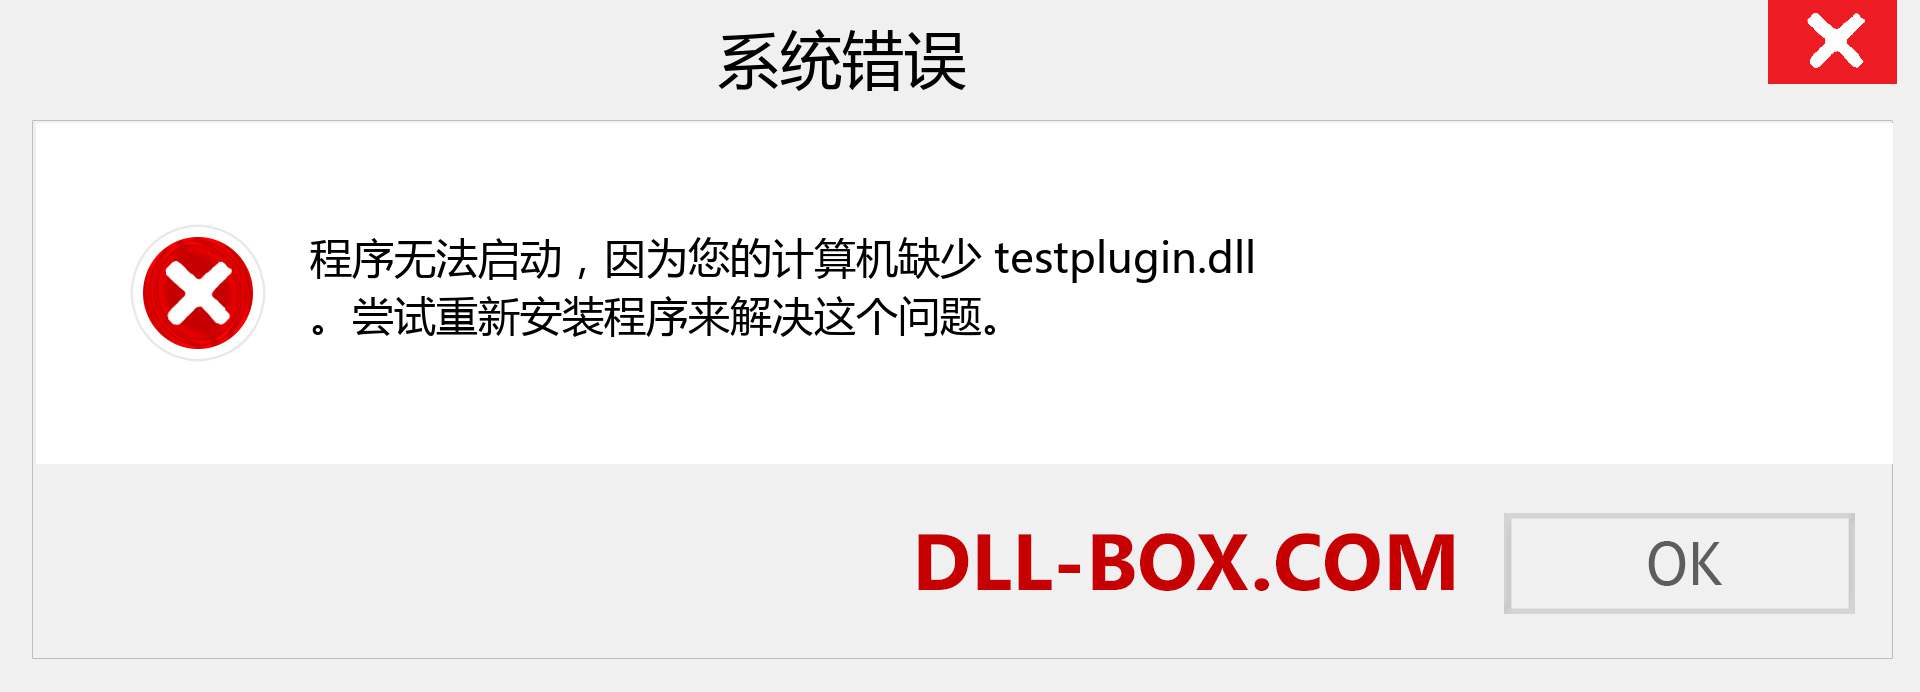 testplugin.dll 文件丢失？。 适用于 Windows 7、8、10 的下载 - 修复 Windows、照片、图像上的 testplugin dll 丢失错误